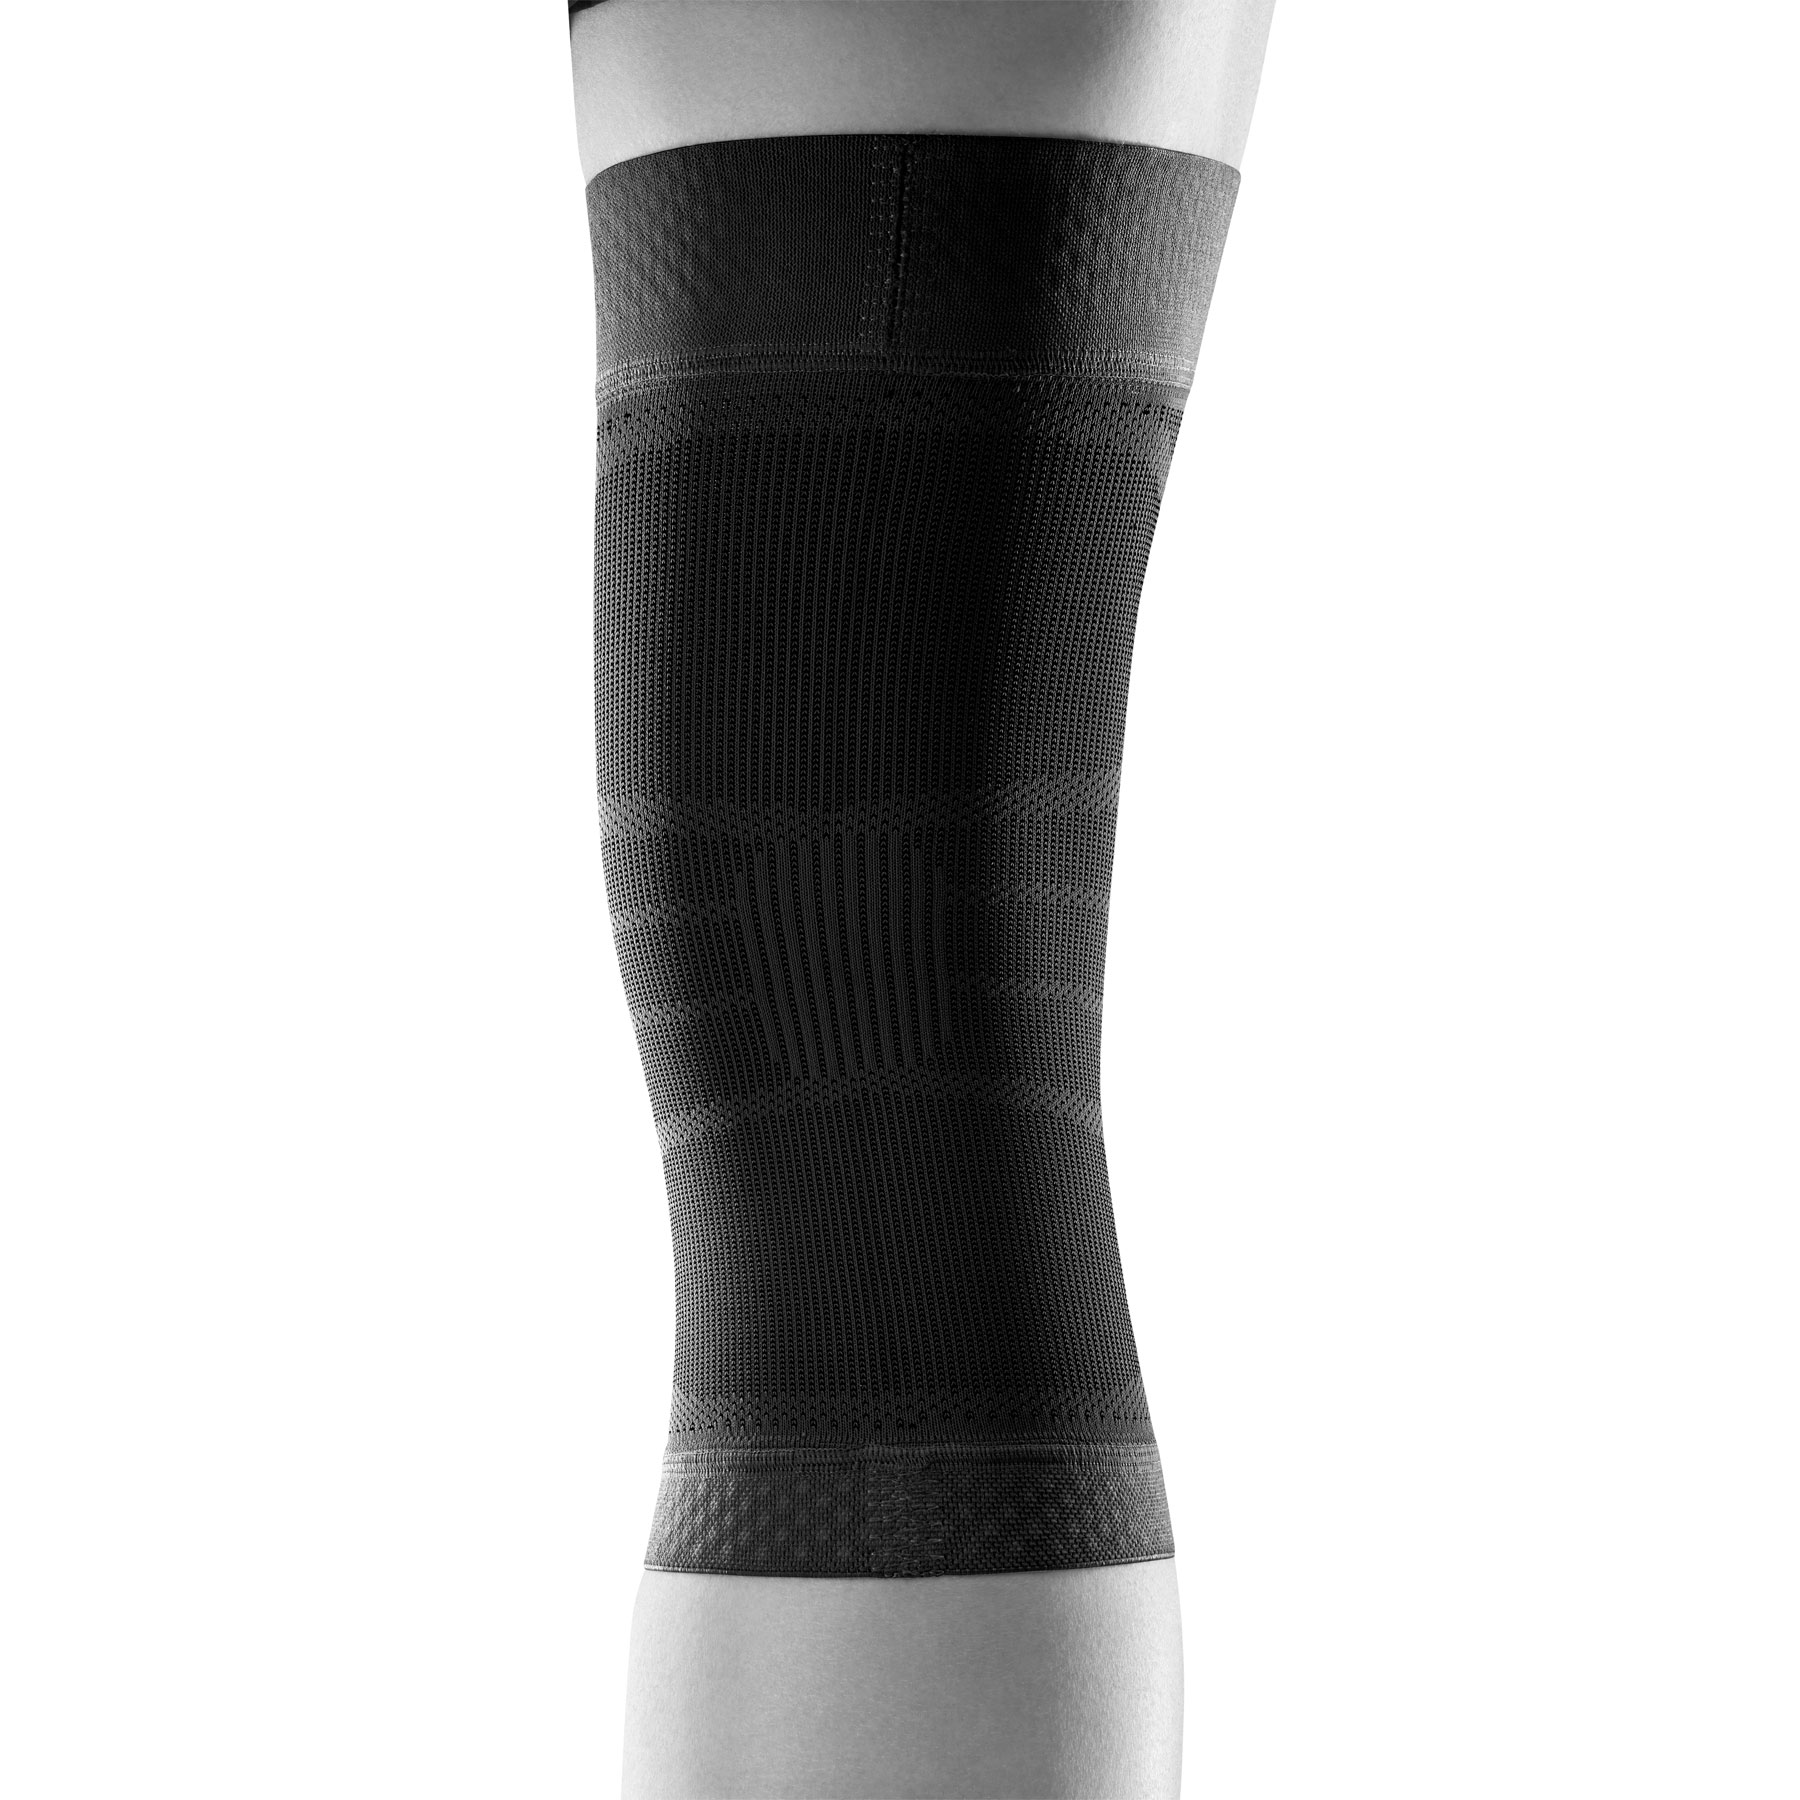 Bauerfeind Sport Compression Knee Support Nba-(Black)